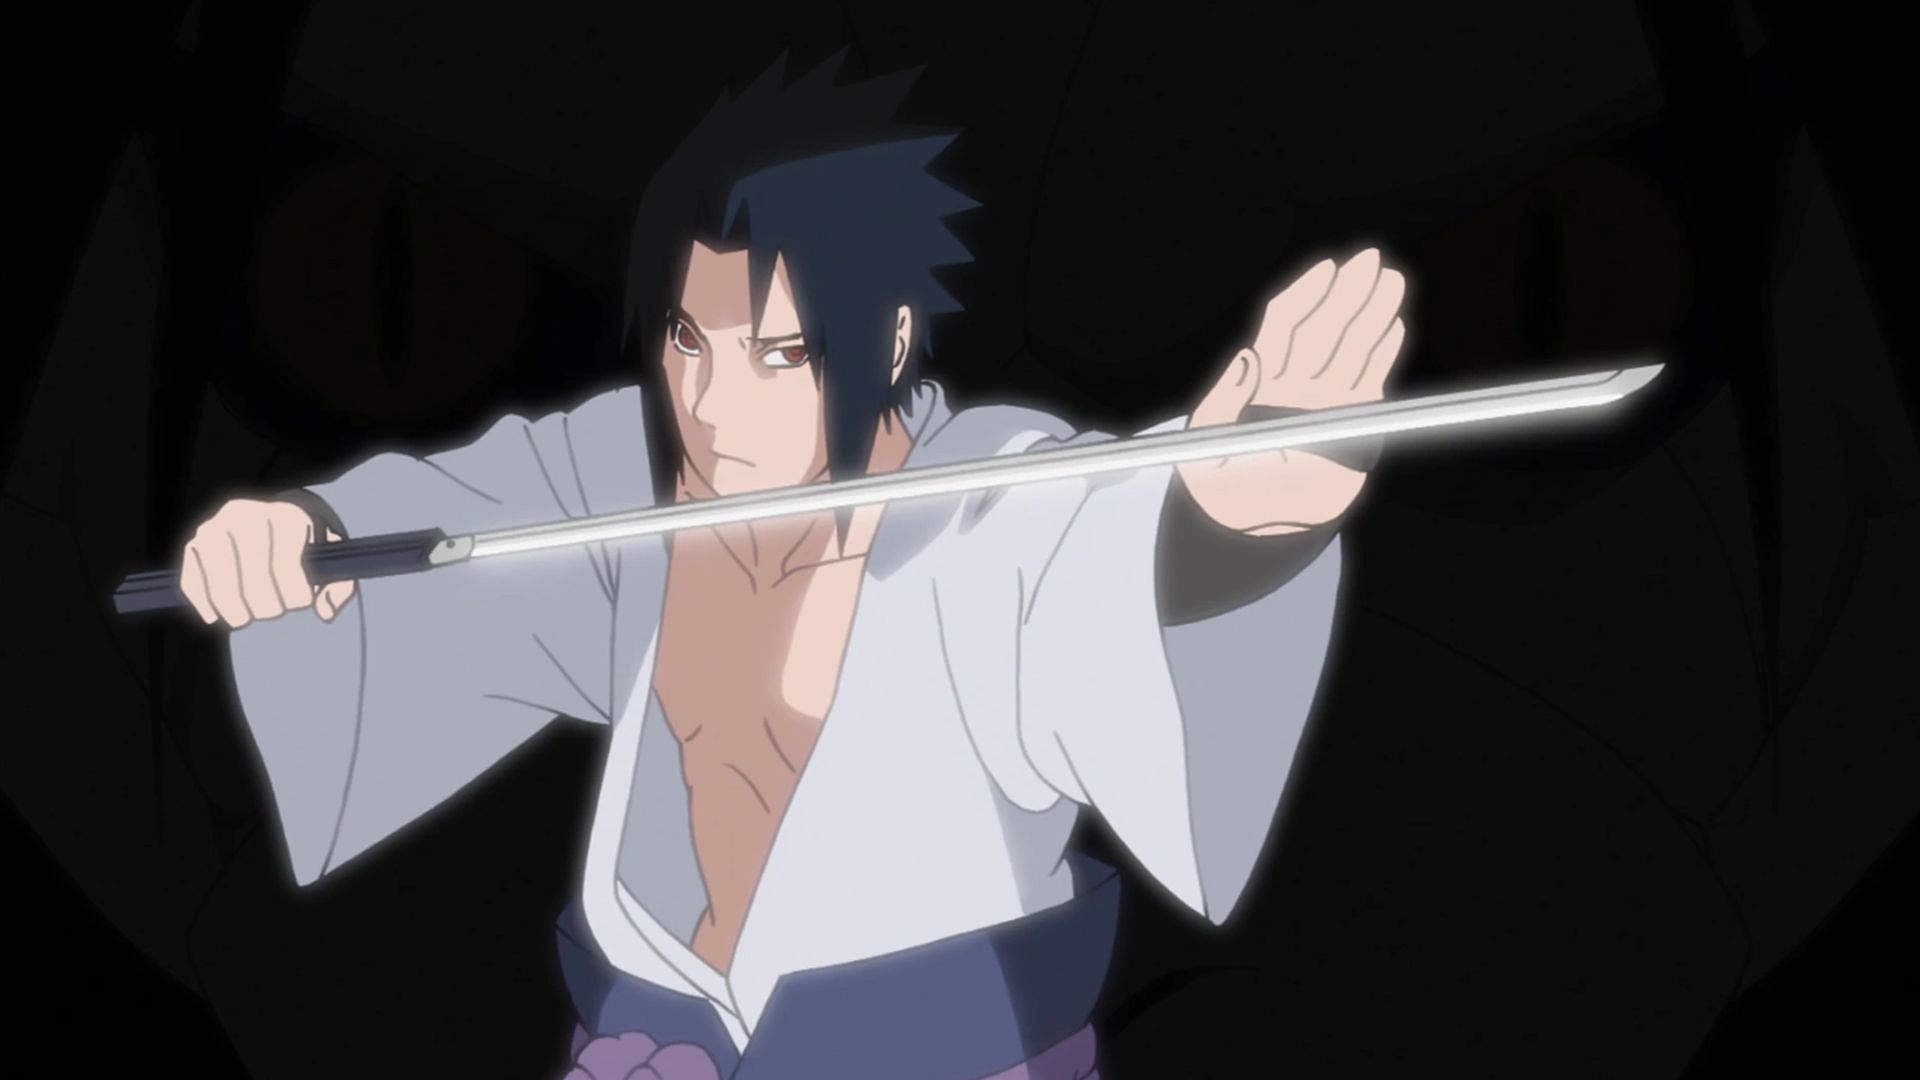 Sasuke (Image via Studio Pierrot)